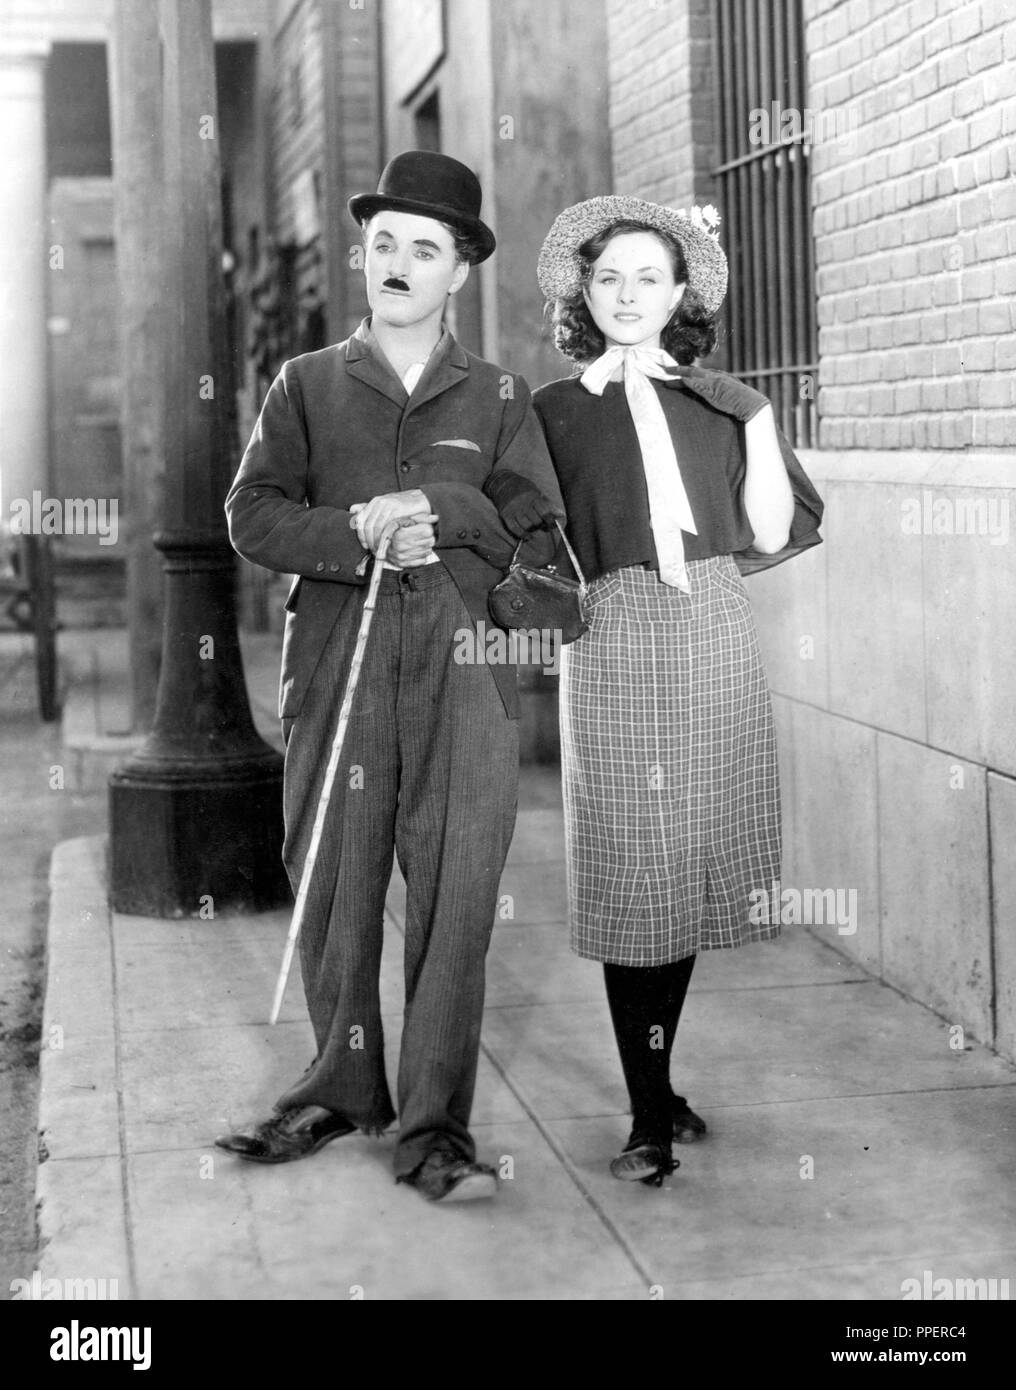 ESCENA DE LA PELICULA TIEMPOS MODERNOS LARGOMETRAJE DE 1936 DIRIGIDO, ESCRITO Y PROTAGONIZADO POR Charles Chaplin. Foto Stock